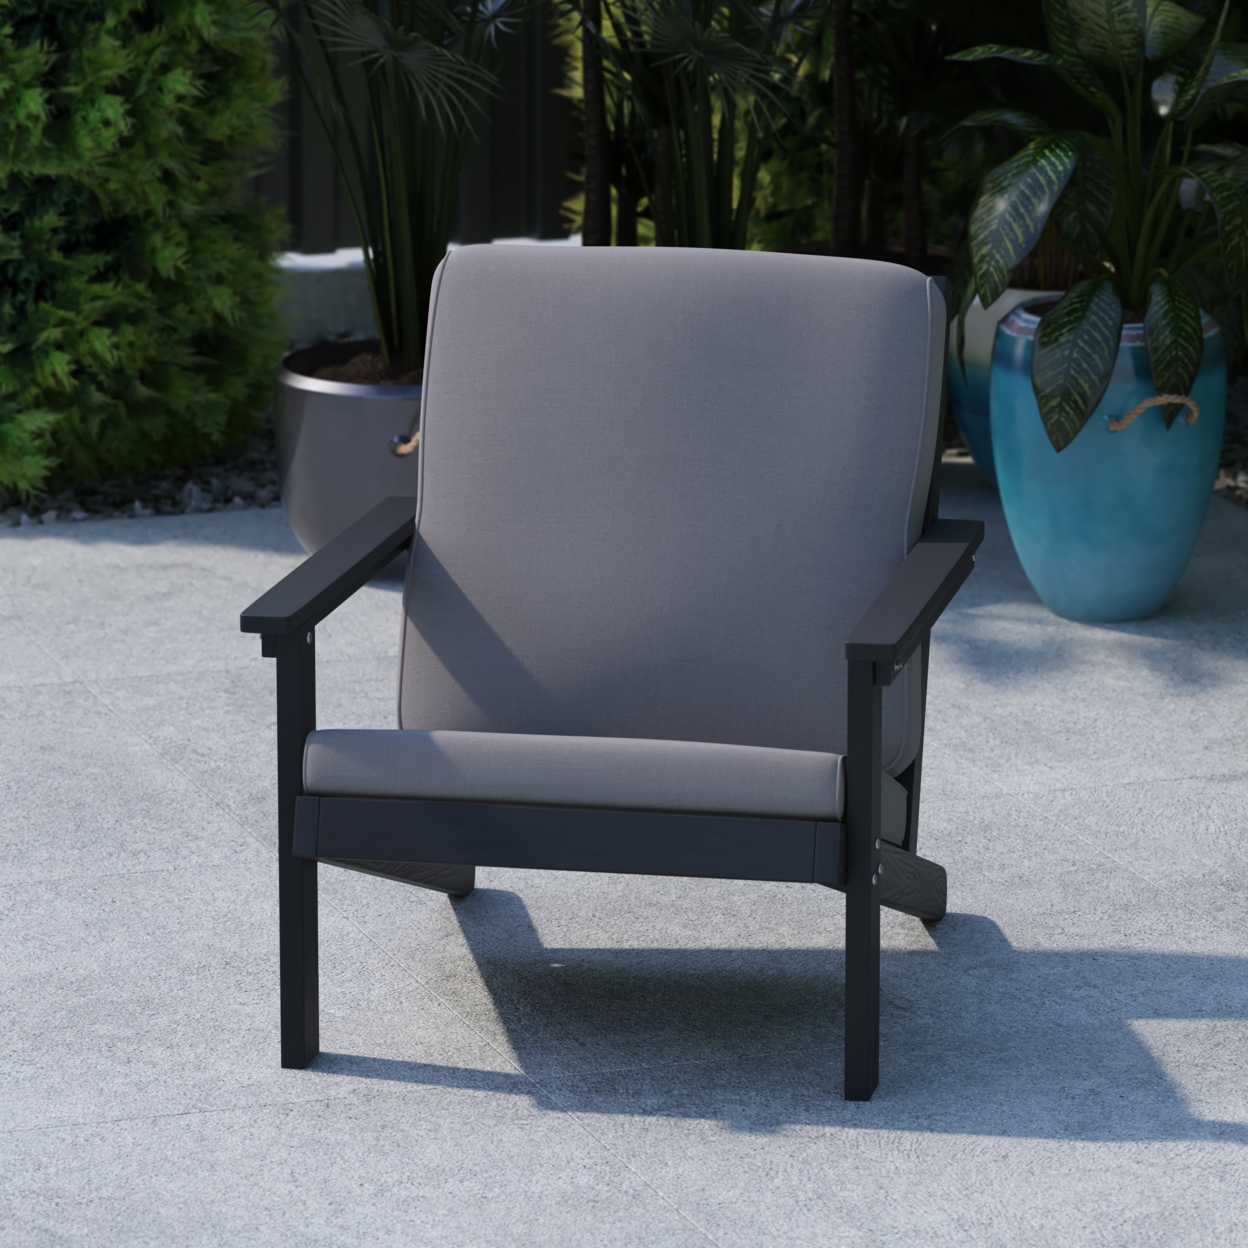 Black Chair-Charcoal Cushions